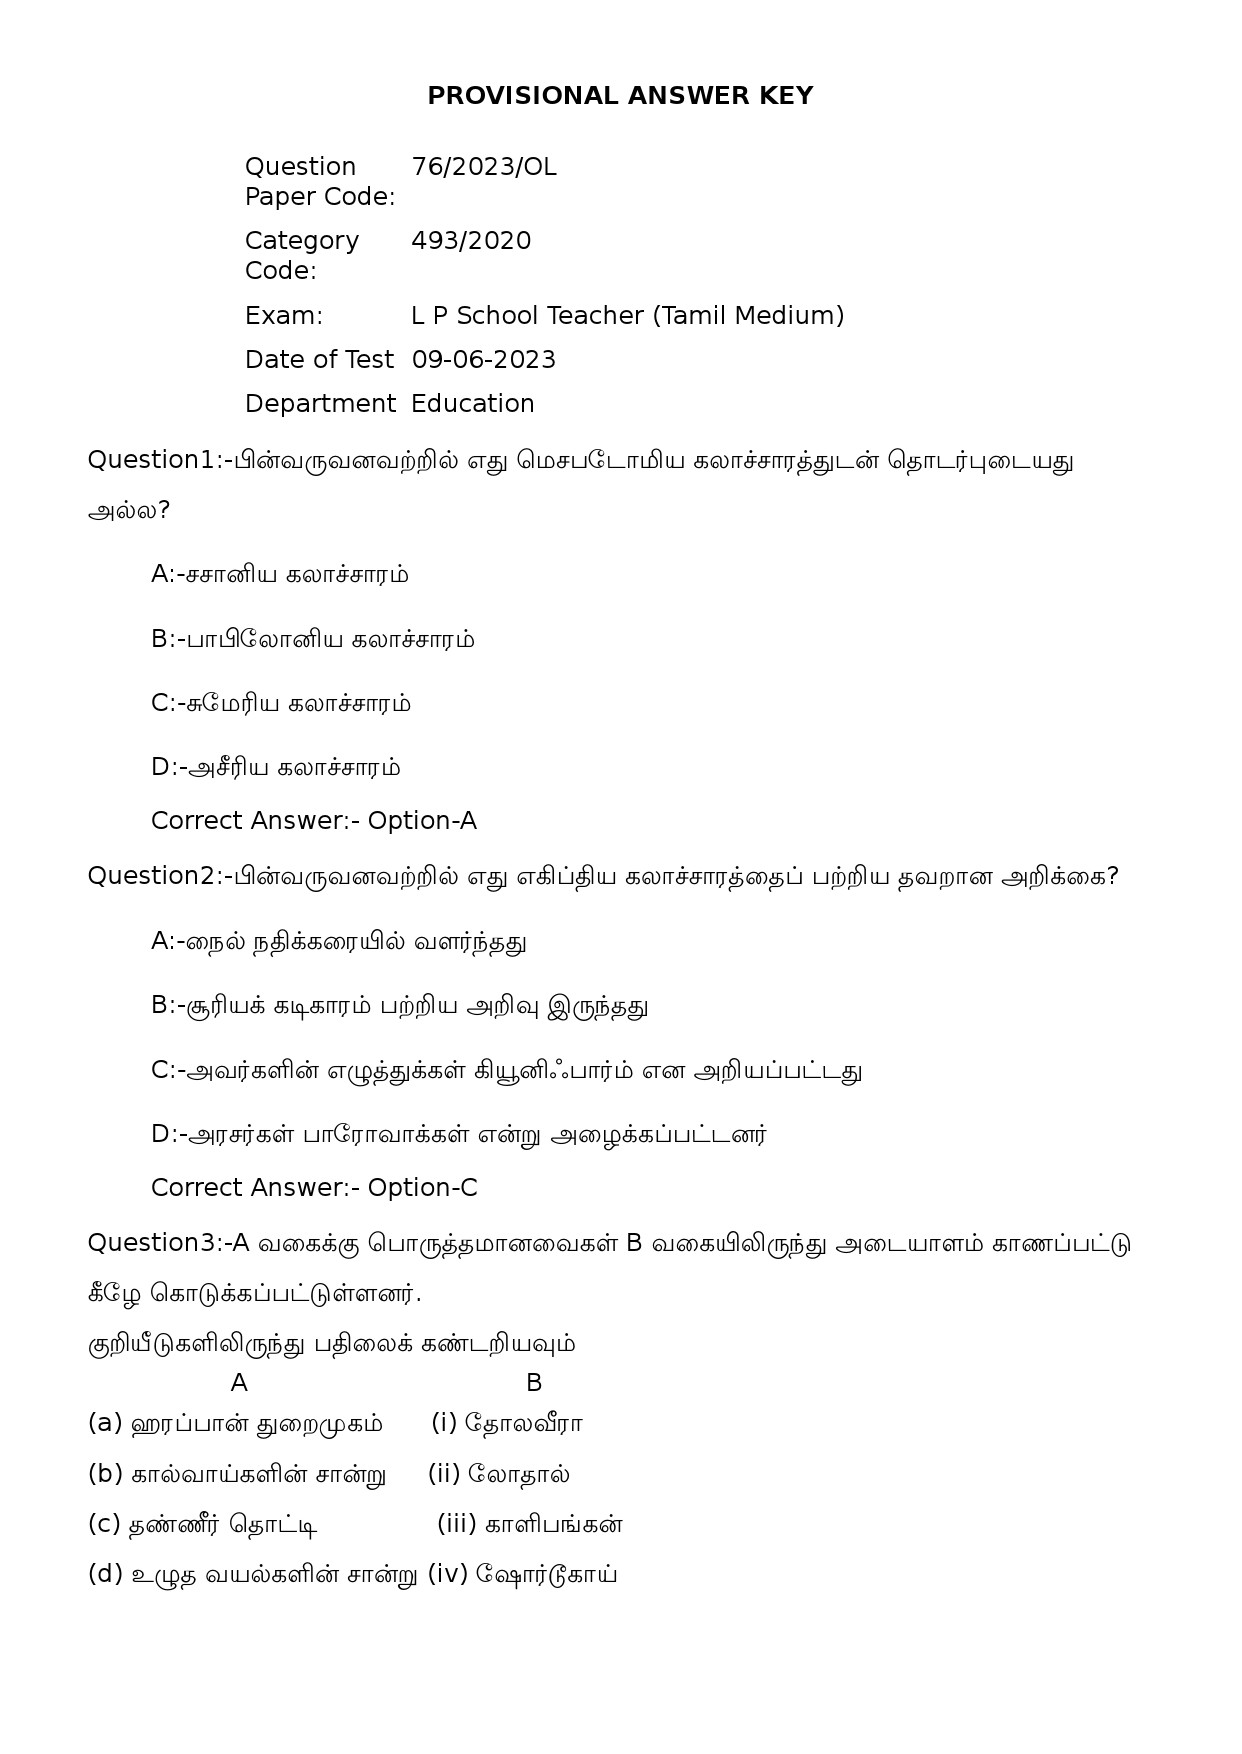 KPSC L P School Teacher Tamil Medium Exam 2023 Code 762023OL 1